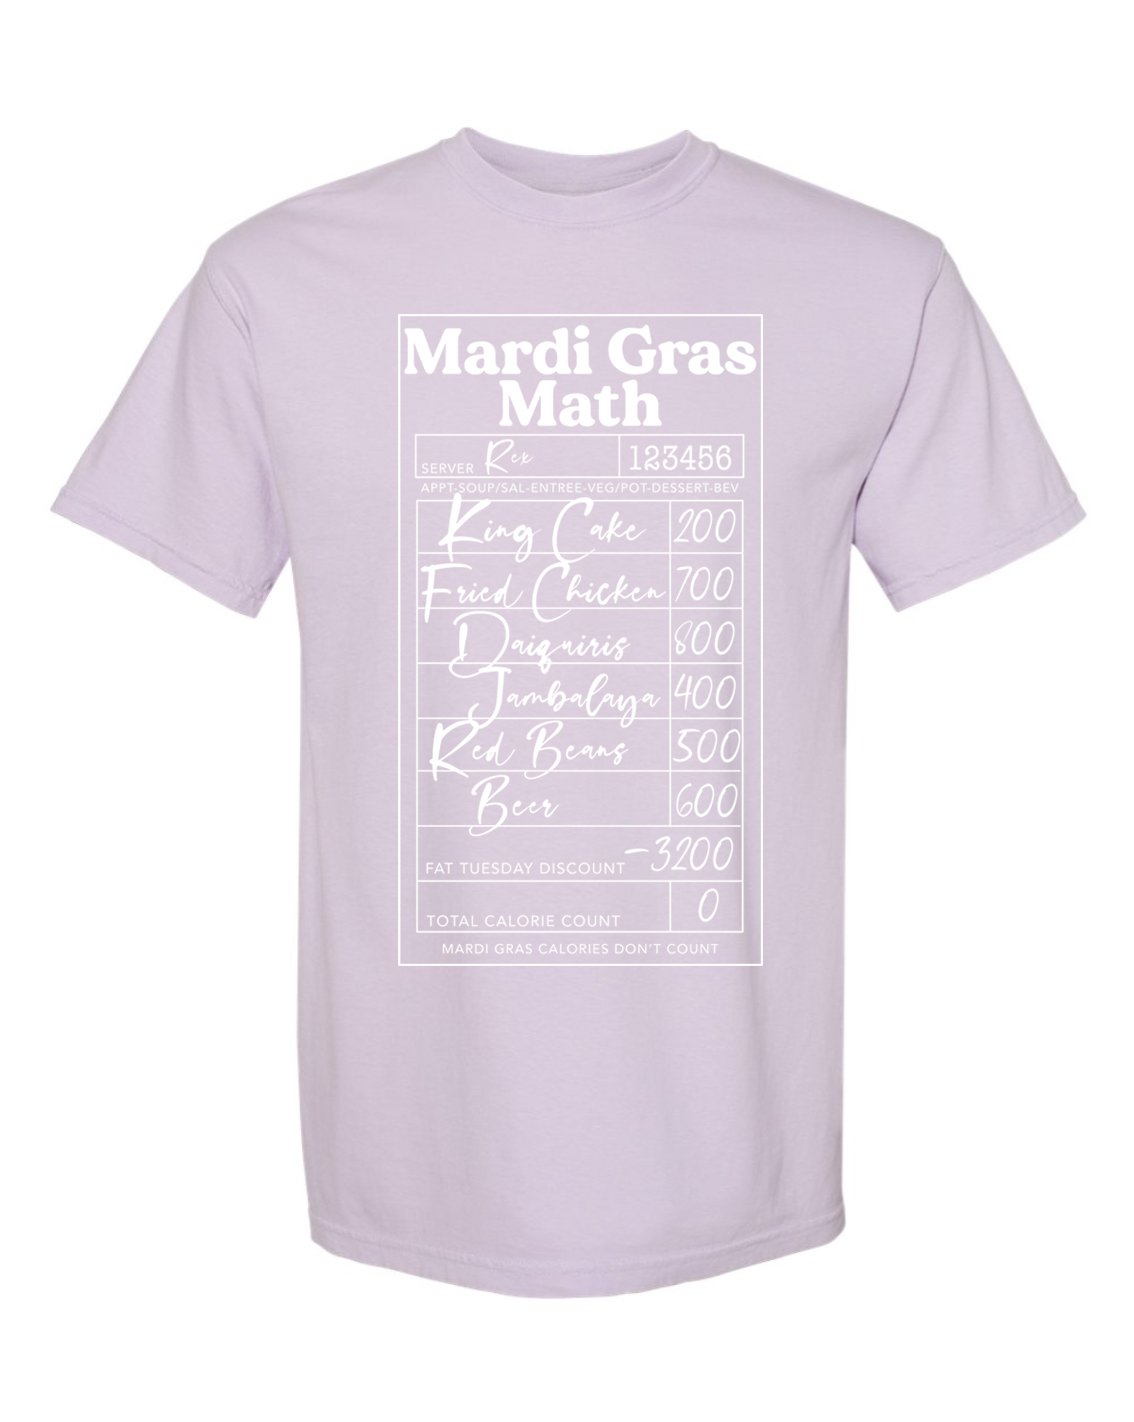 Mardi Gras Math — Schnell Studio